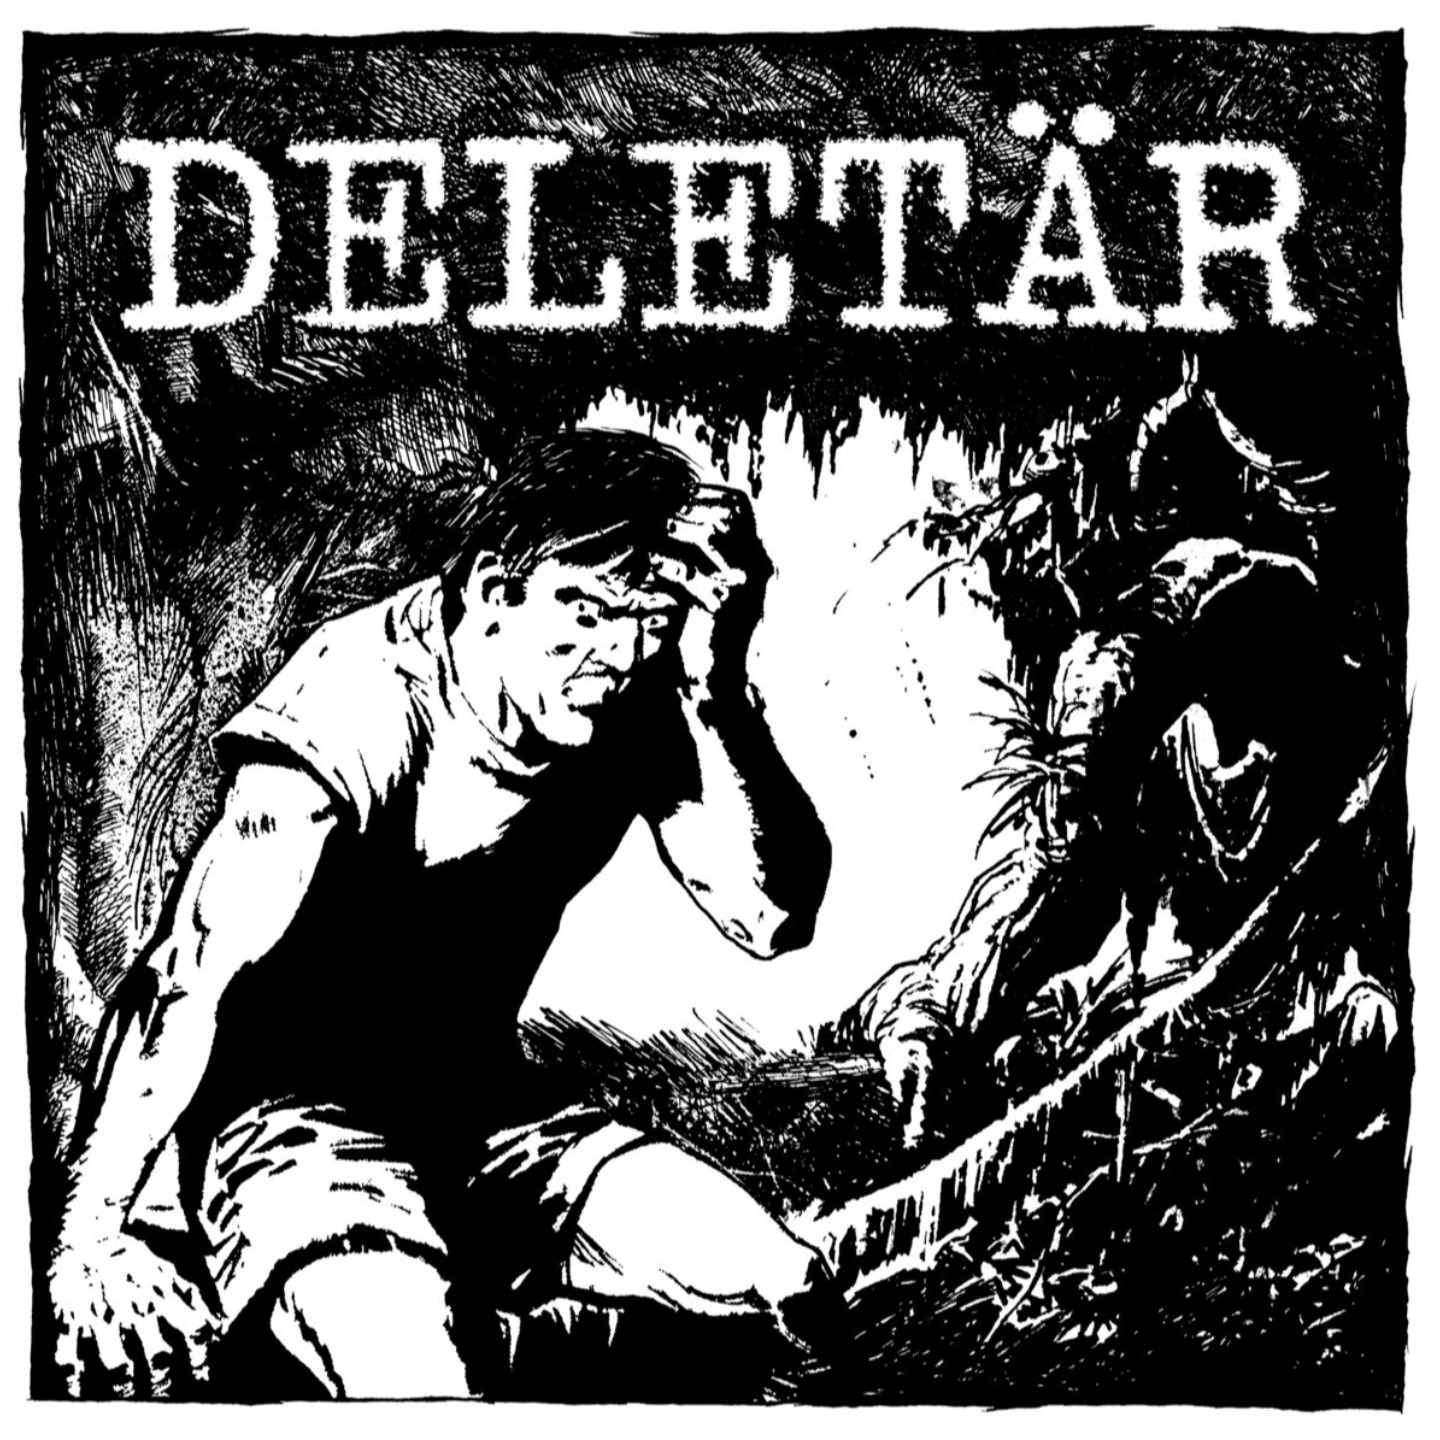 DELETAR - Deletar LP